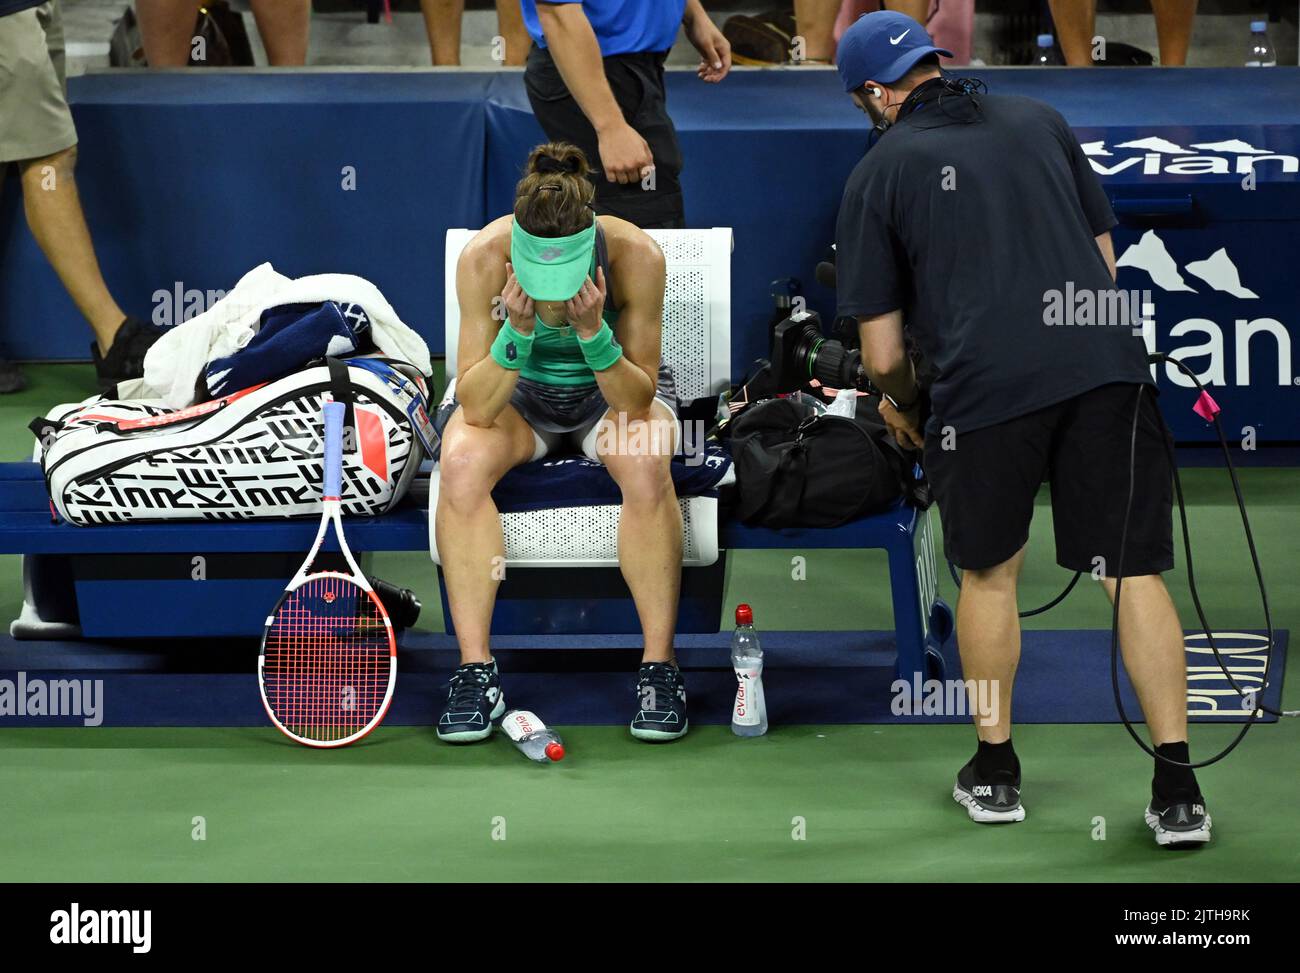 Alize Cornet dopo aver battuto Emma Raducanu durante il secondo giorno degli US Open all'USTA Billie Jean King National Tennis Center di New York. Data immagine: Martedì 30 agosto 2022. Foto Stock